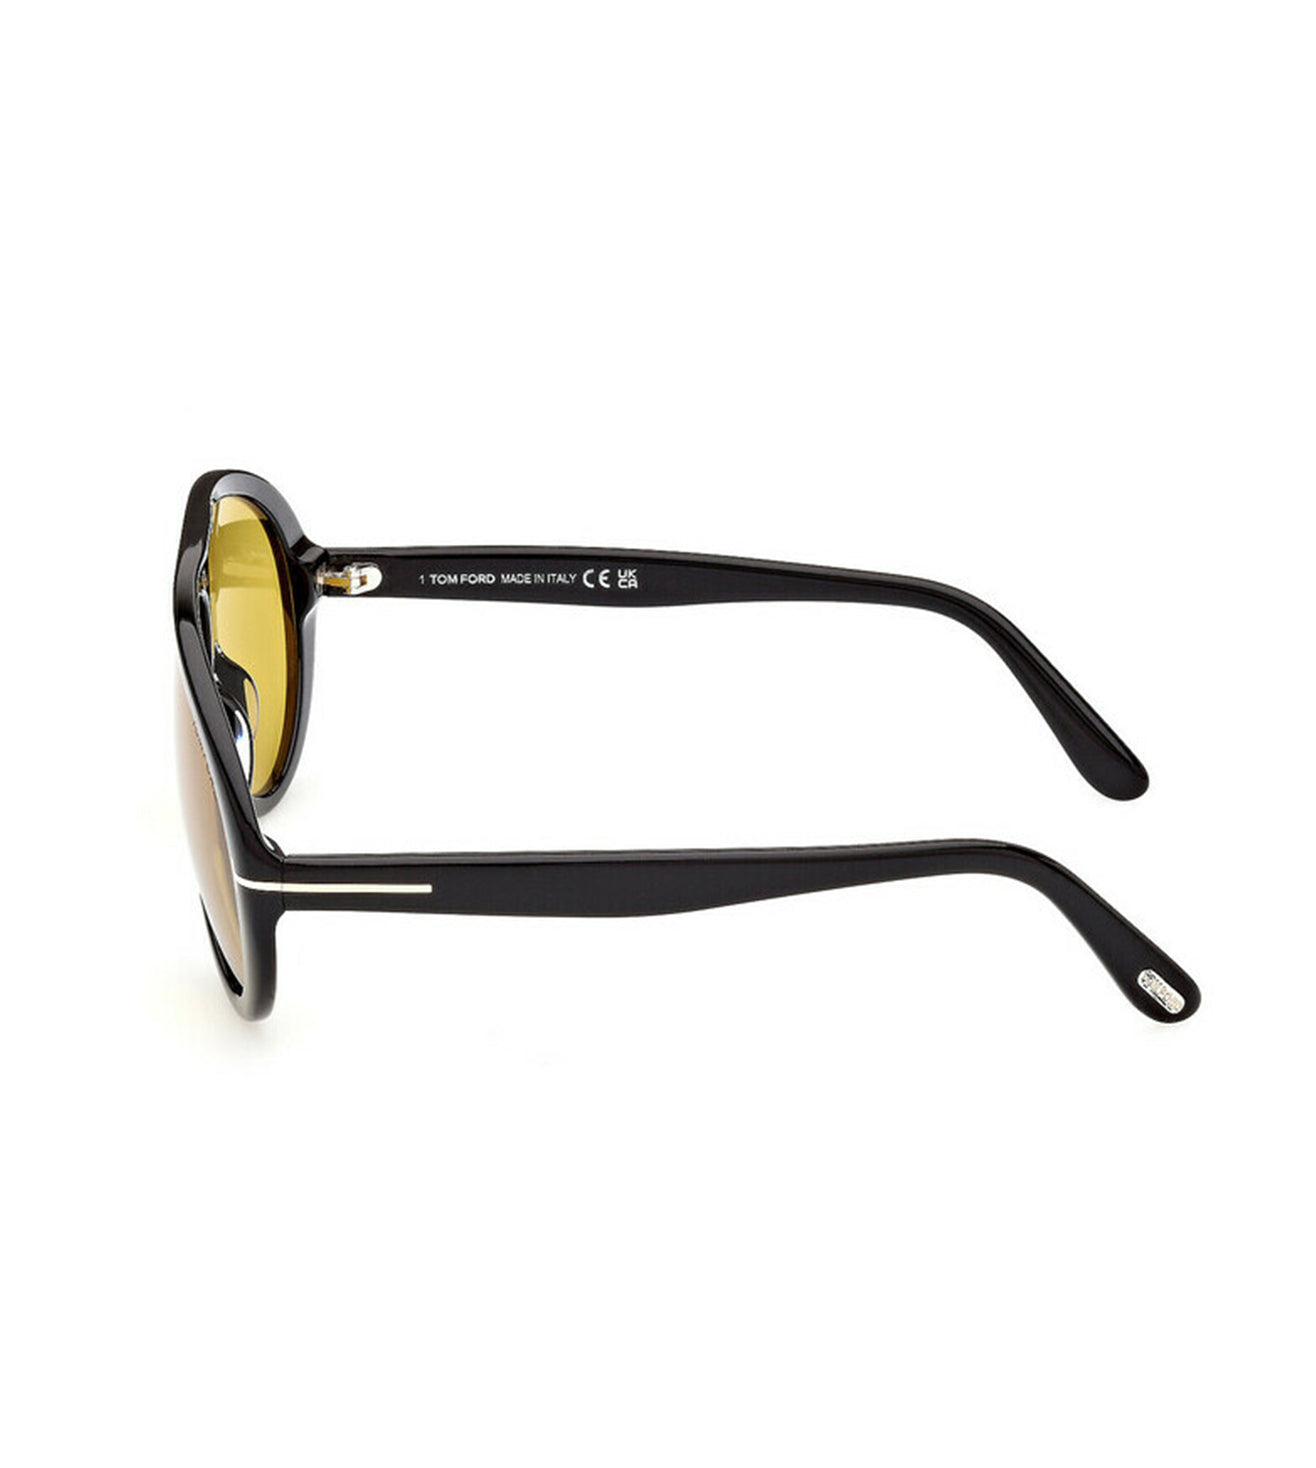 Tom Ford Men's Yellow Aviator Sunglasses